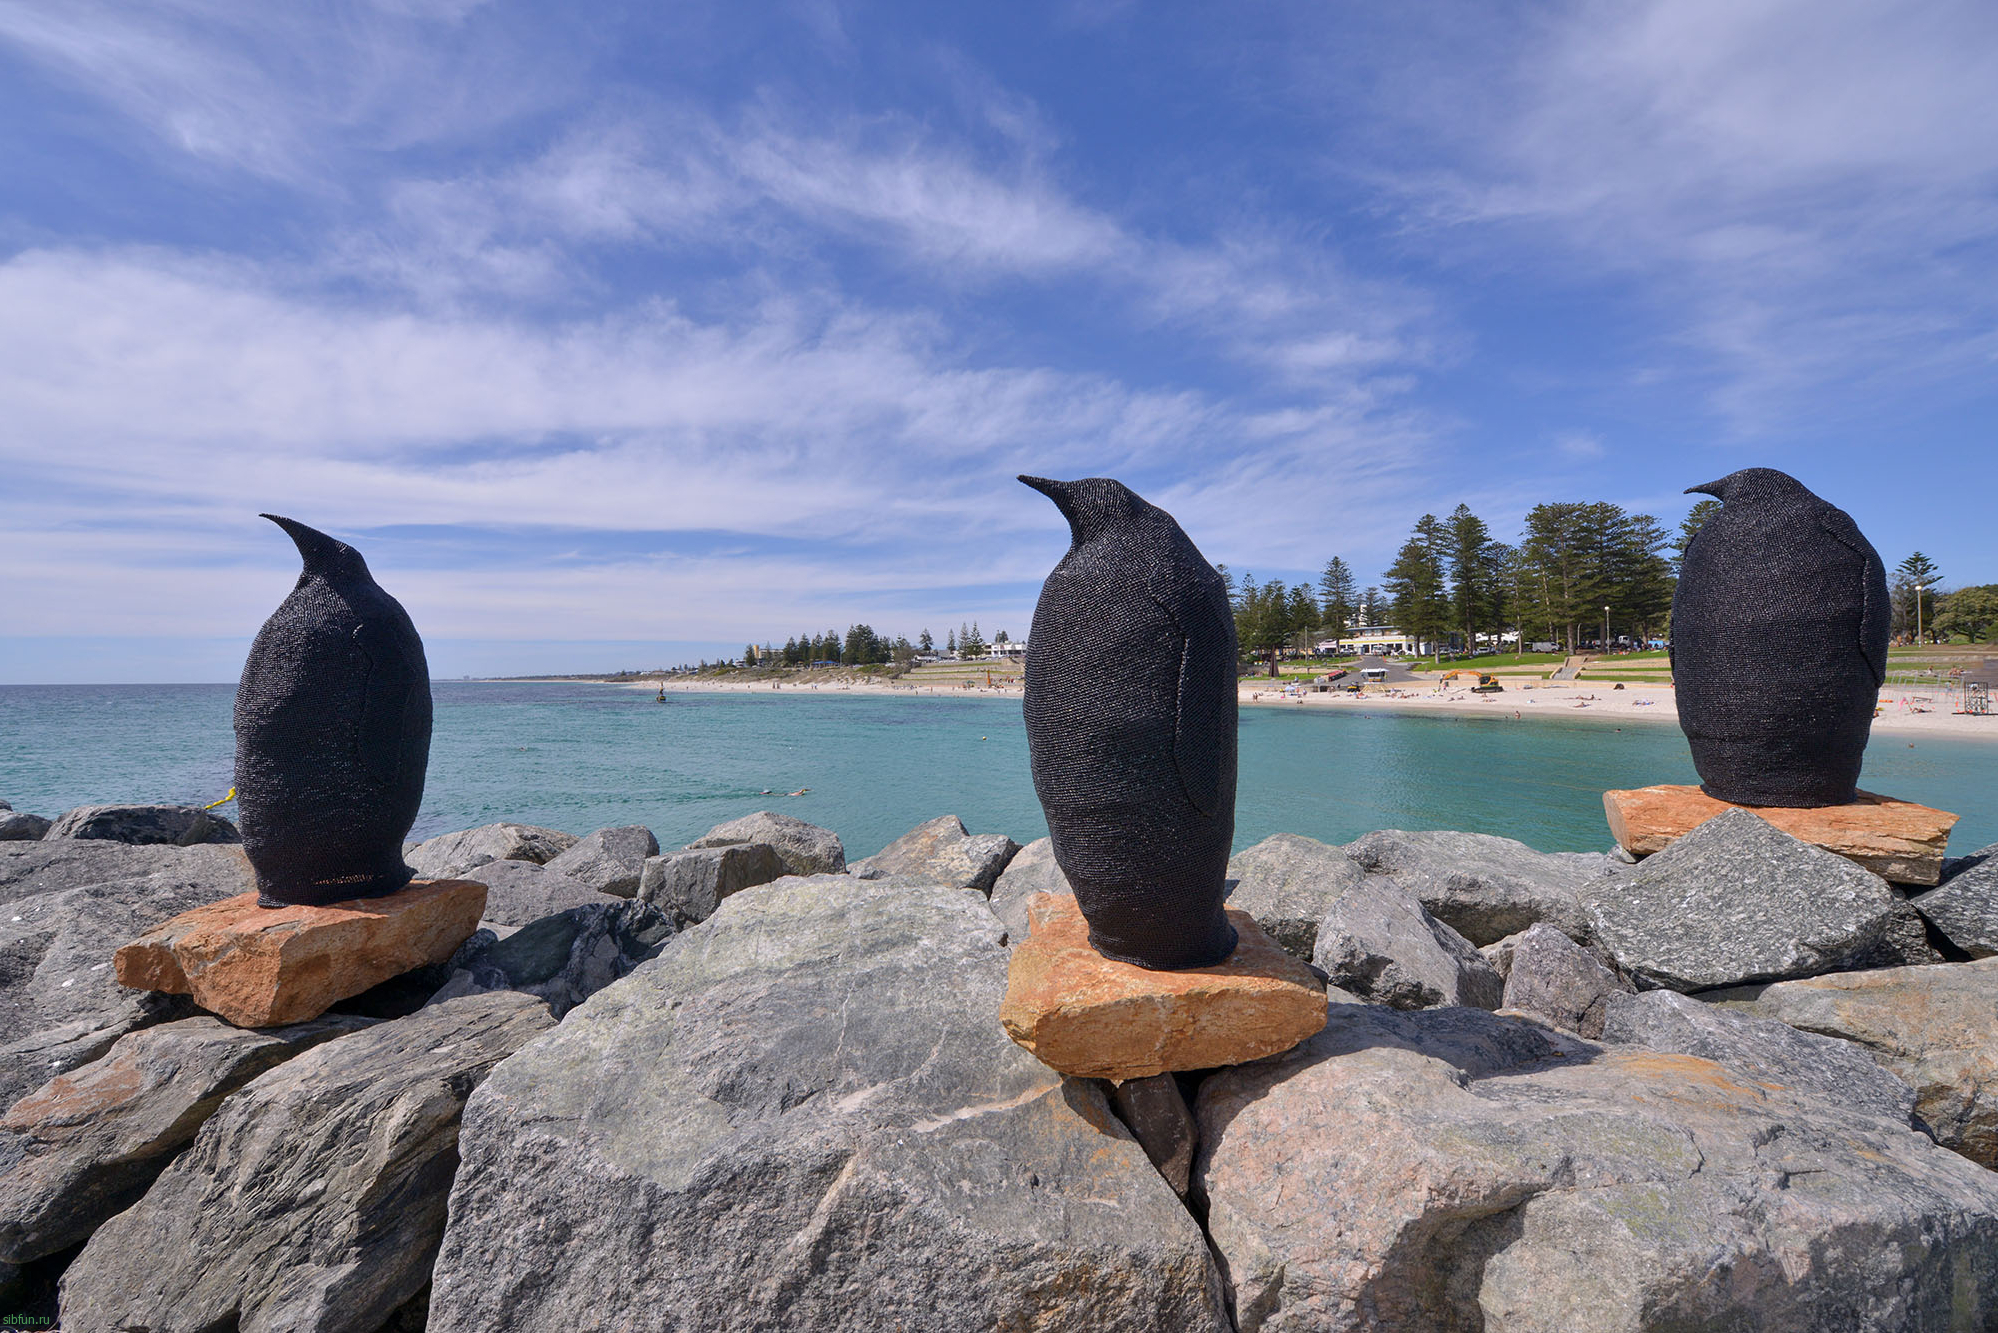 Фестиваль «Скульптура у моря» 2020 (Sculpture by the Sea) | Фестивали Австралии